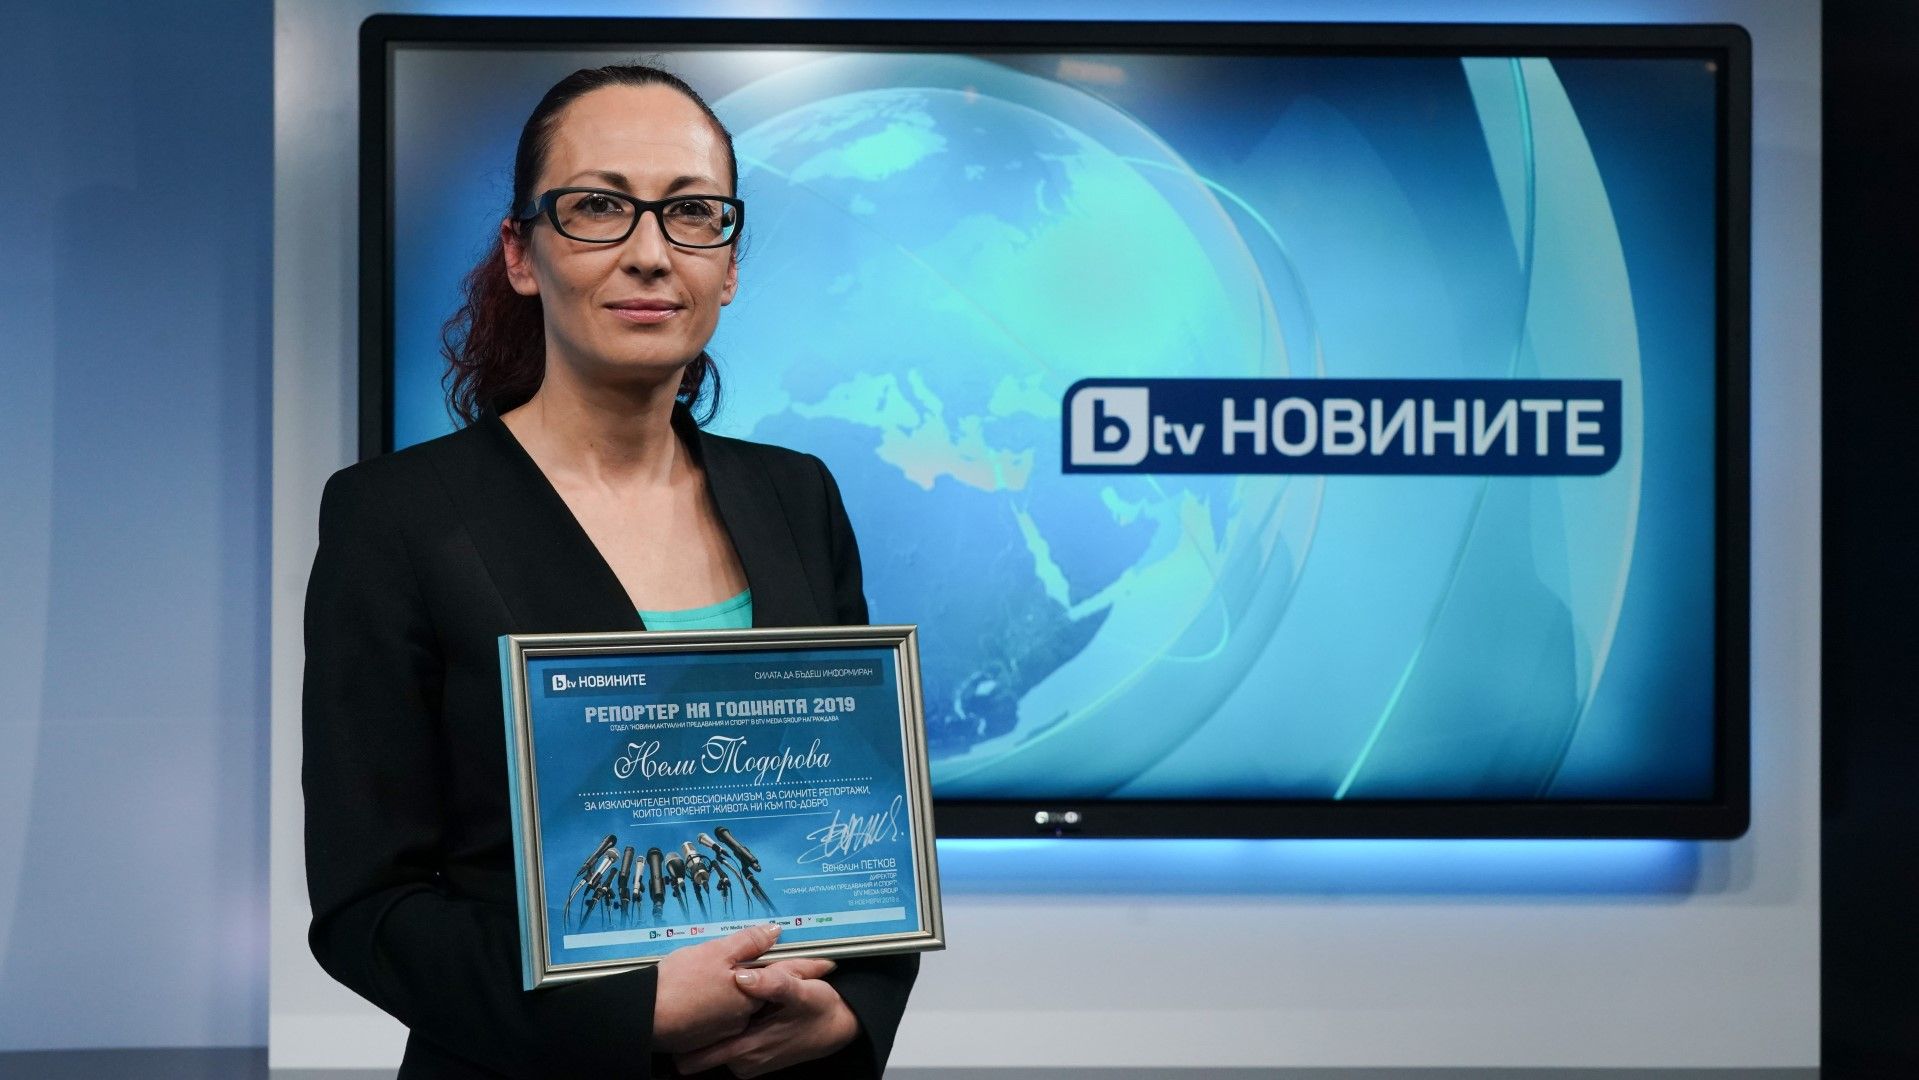 Нели Тодорова - "Репортер на годината"